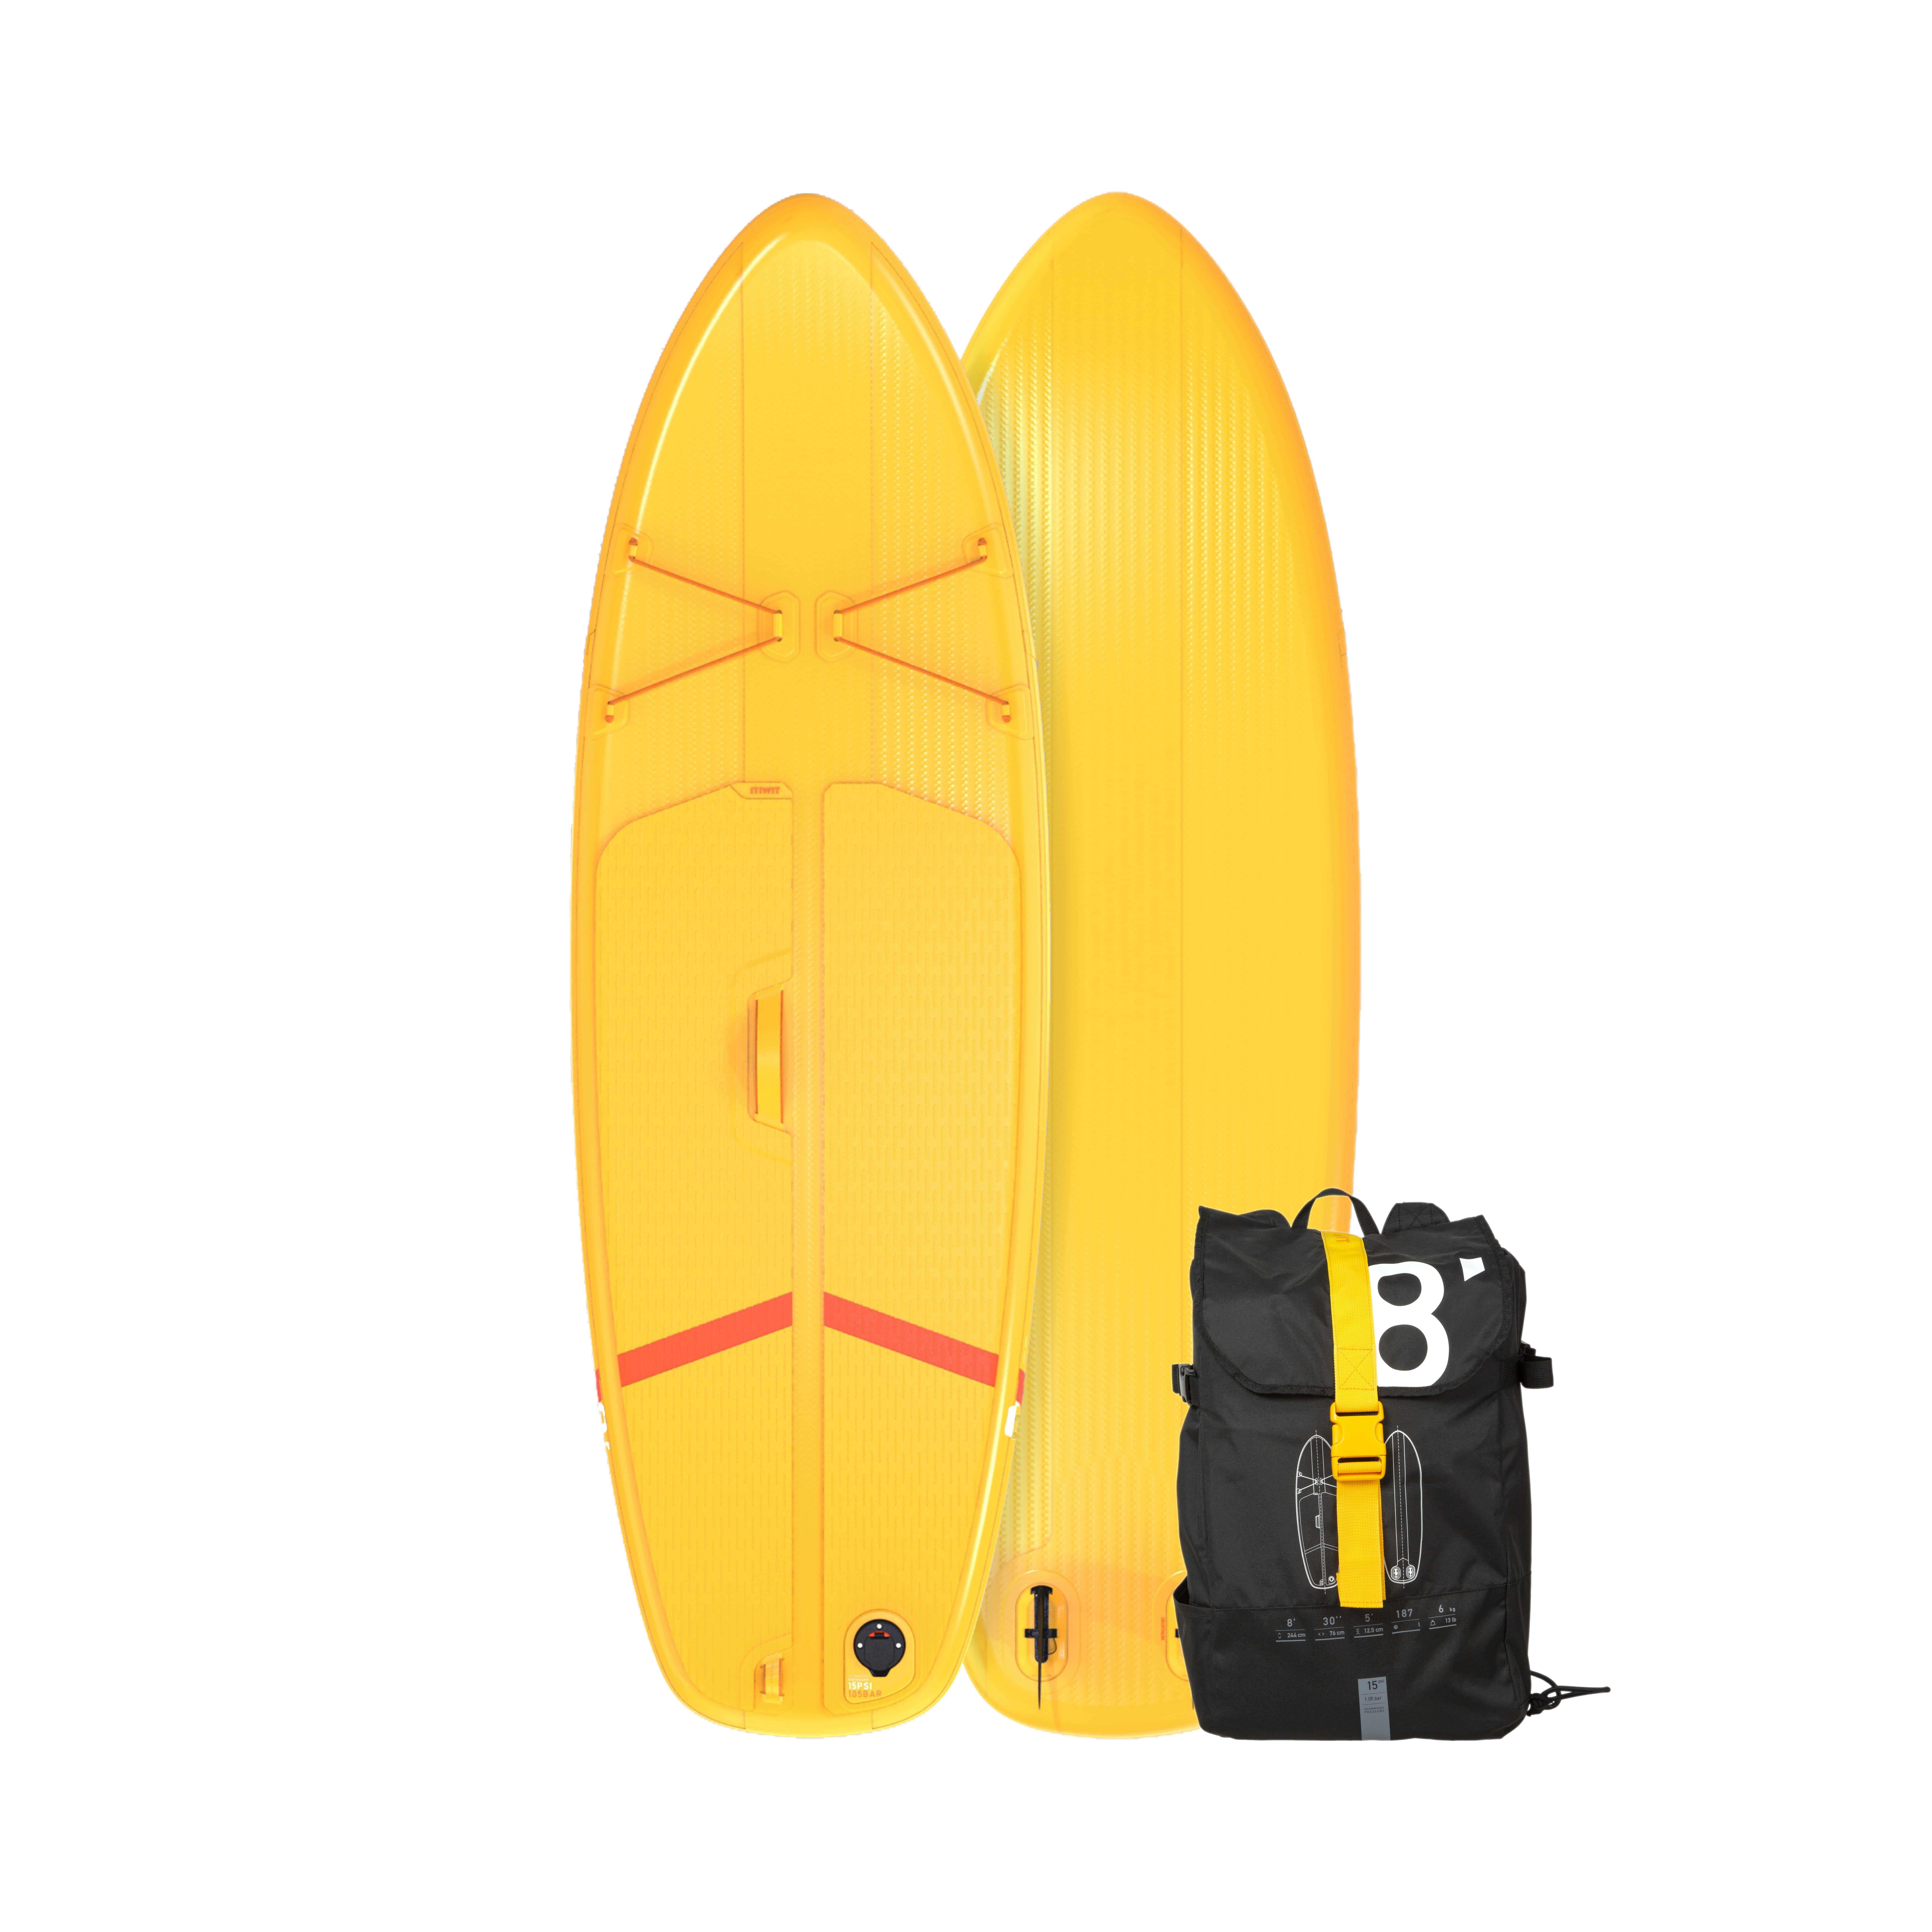 ITIWIT SUP-Board Stand Up Paddle aufblasbar Compact Gr. S Einsteiger weiss/gelb EINHEITSGRÖSSE